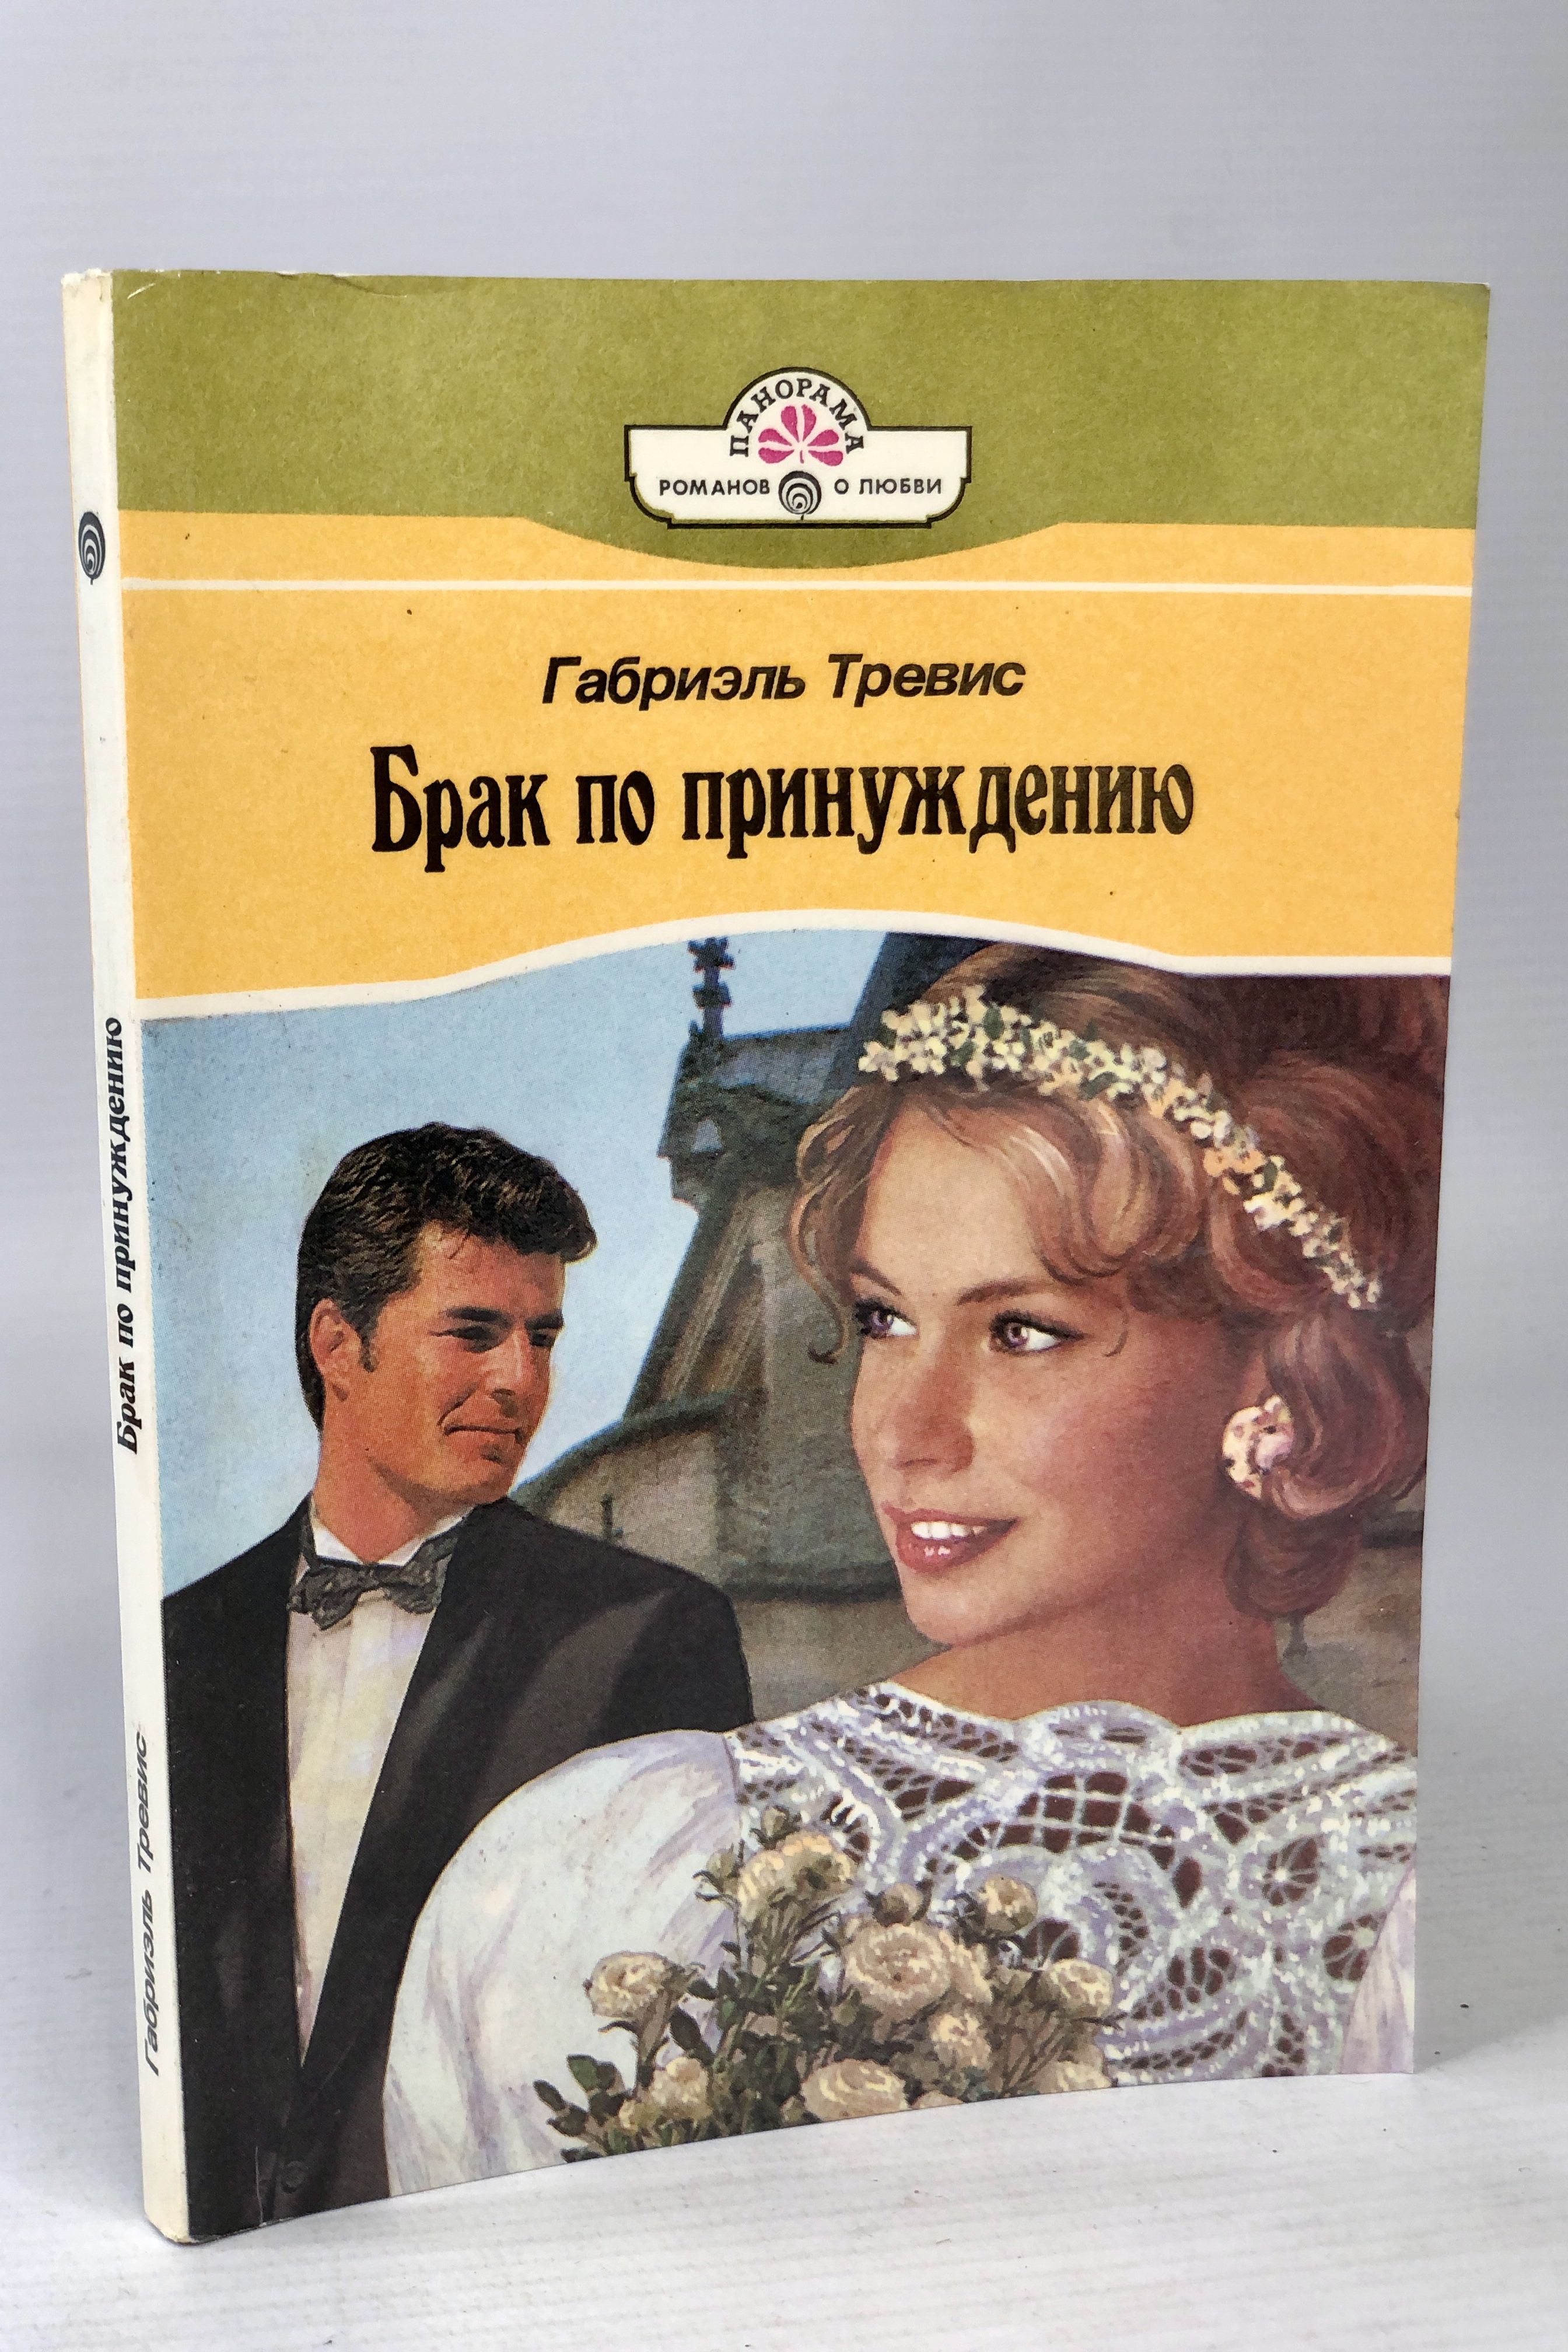 Книга про брак. Книга про брак по принуждению популярная. Образцовое супружество книга. Замужество книги